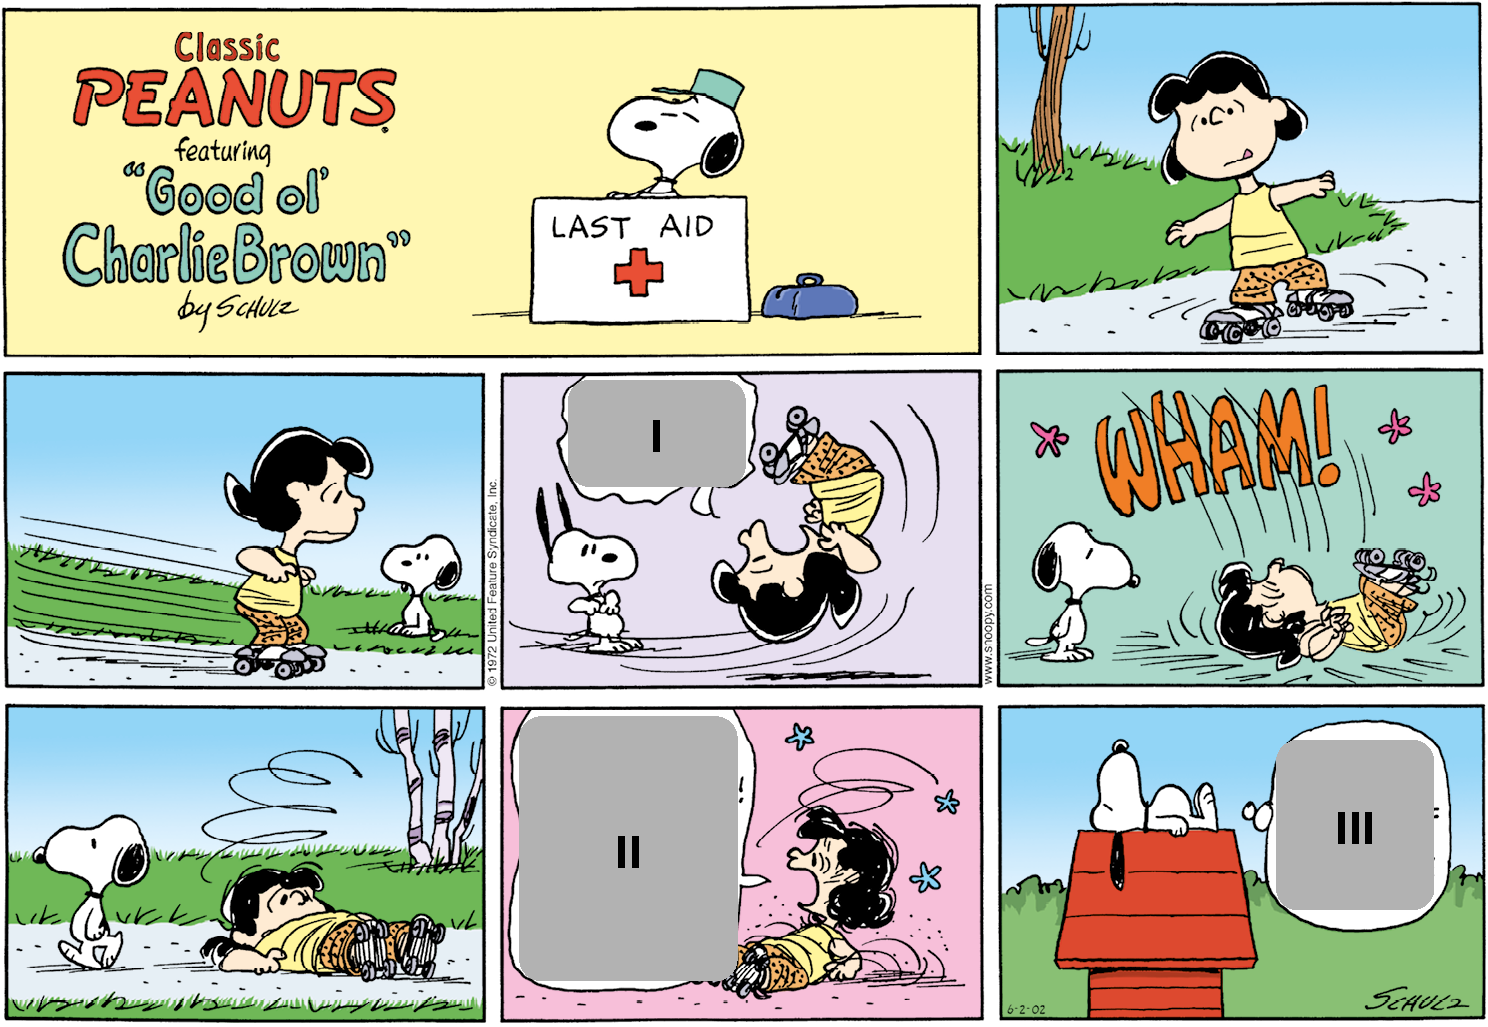 História em quadrinhos. Composta por oito quadros. Apresenta como personagens: Snoopy, um cachorro pequeno, de cor branca com orelhas, mancha no dorso e focinho pequeno em preto. Lucy, menina de cabelos curtos em preto, usando regata em amarelo, bermuda em laranja e com um par de patins em cinza. As cenas se passam em local aberto.   Título: Classic Peanuts feafuring “Good ol' Charlie Brown” by Schulz. Quadro um: Snoopy atrás de um balcão branco com texto: LAST AID e uma cruz vermelha. À direita, uma maleta pequena azul. Snoopy é visto do pescoço para cima com um chapéu sobre a cabeça e olhos fechados.  Quadro dois: Lucy andando de patins, em piso cinza com os braços bem abertos. Ao fundo, à esquerda, local com grama verde e um tronco de árvore. Quadro três: Lucy, com o corpo voltado para à direita, se movendo velozmente. Ela olha para frente, olhos arregalados e expressão tensa. Mais ao fundo, local com grama e Snoopy em pé, a observa. Quadro quatro: Lucy cai com o corpo para cima, pernas ao ar, boca bem aberta e olhos arregalados. Perto dela, balão de fala e dentro, espaço para resposta um. Ao fundo, à esquerda, Snoopy olhando para ela, de olhos abertos e orelhas erguidas para cima.  Quadro cinco: Lucy caindo e batendo as costas no chão, com os olhos bem abertos. Acima, texto: WHAM! E no ar, estrelas rosas. À esquerda, Snoopy em pé, olhando um pouco para baixo, em direção a Lucy. Quadro seis: à esquerda, Snoopy em pé, caminhando para à esquerda e à direita, Lucy com o corpo estendido sobre o chão. Ela olha um pouco para frente, uma linha fina acima dela em espiral. Ao fundo, local com grama e vista parcial de árvore à direita.  Quadro sete: Lucy à direita, com o corpo no chão, a cabeça um pouco para cima, olhando para a esquerda, com a boca bem aberta. Balão de fala com espaço para resposta dois. Próximo à cabeça dela, linhas finas em espiral e com três estrelas em azul-claro.  Quadro oito: à esquerda, uma casa pequena em vermelho de  telhado triangular, onde Snoopy está deitado, com corpo estirado, olhos fechados e orelhas caídas para baixo. Perto dele, balão de pensamento com espaço para resposta três. Ao fundo, local com grama verde e acima, céu azul claro.